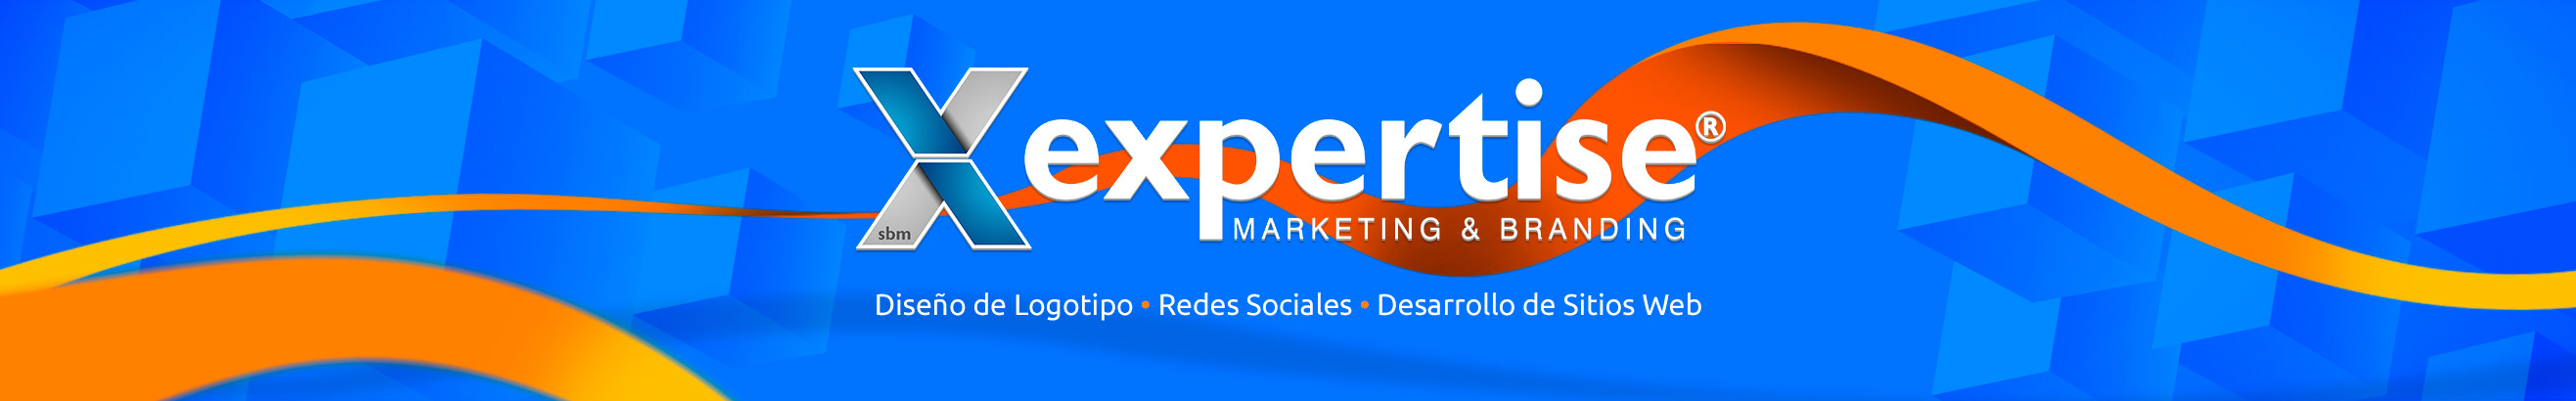 Expertise Marketing & Branding's profile banner